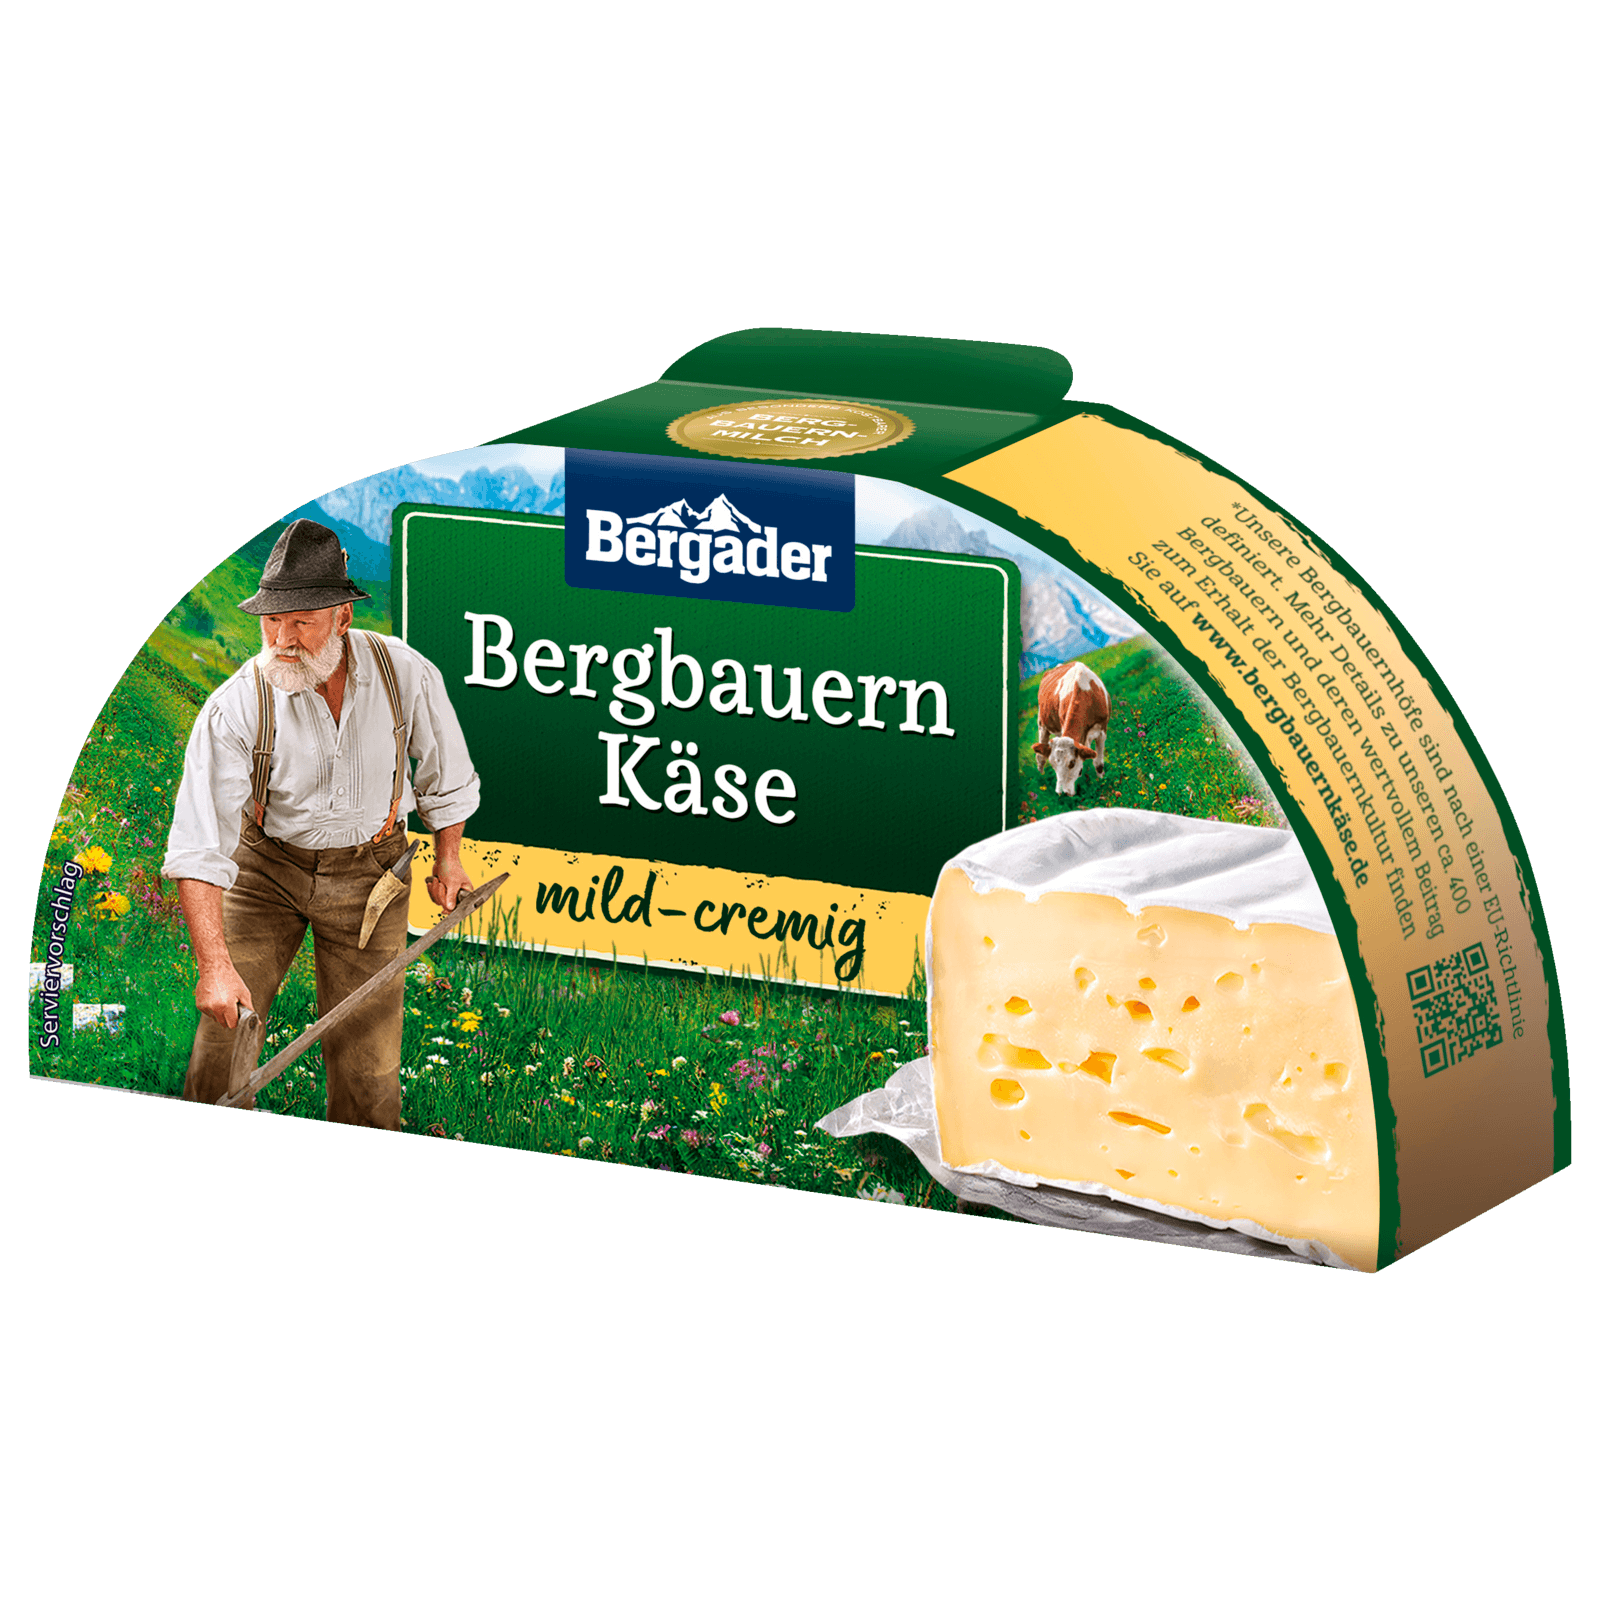 Bergader Käse 165g online bestellen! REWE Bergbauern bei mild cremig